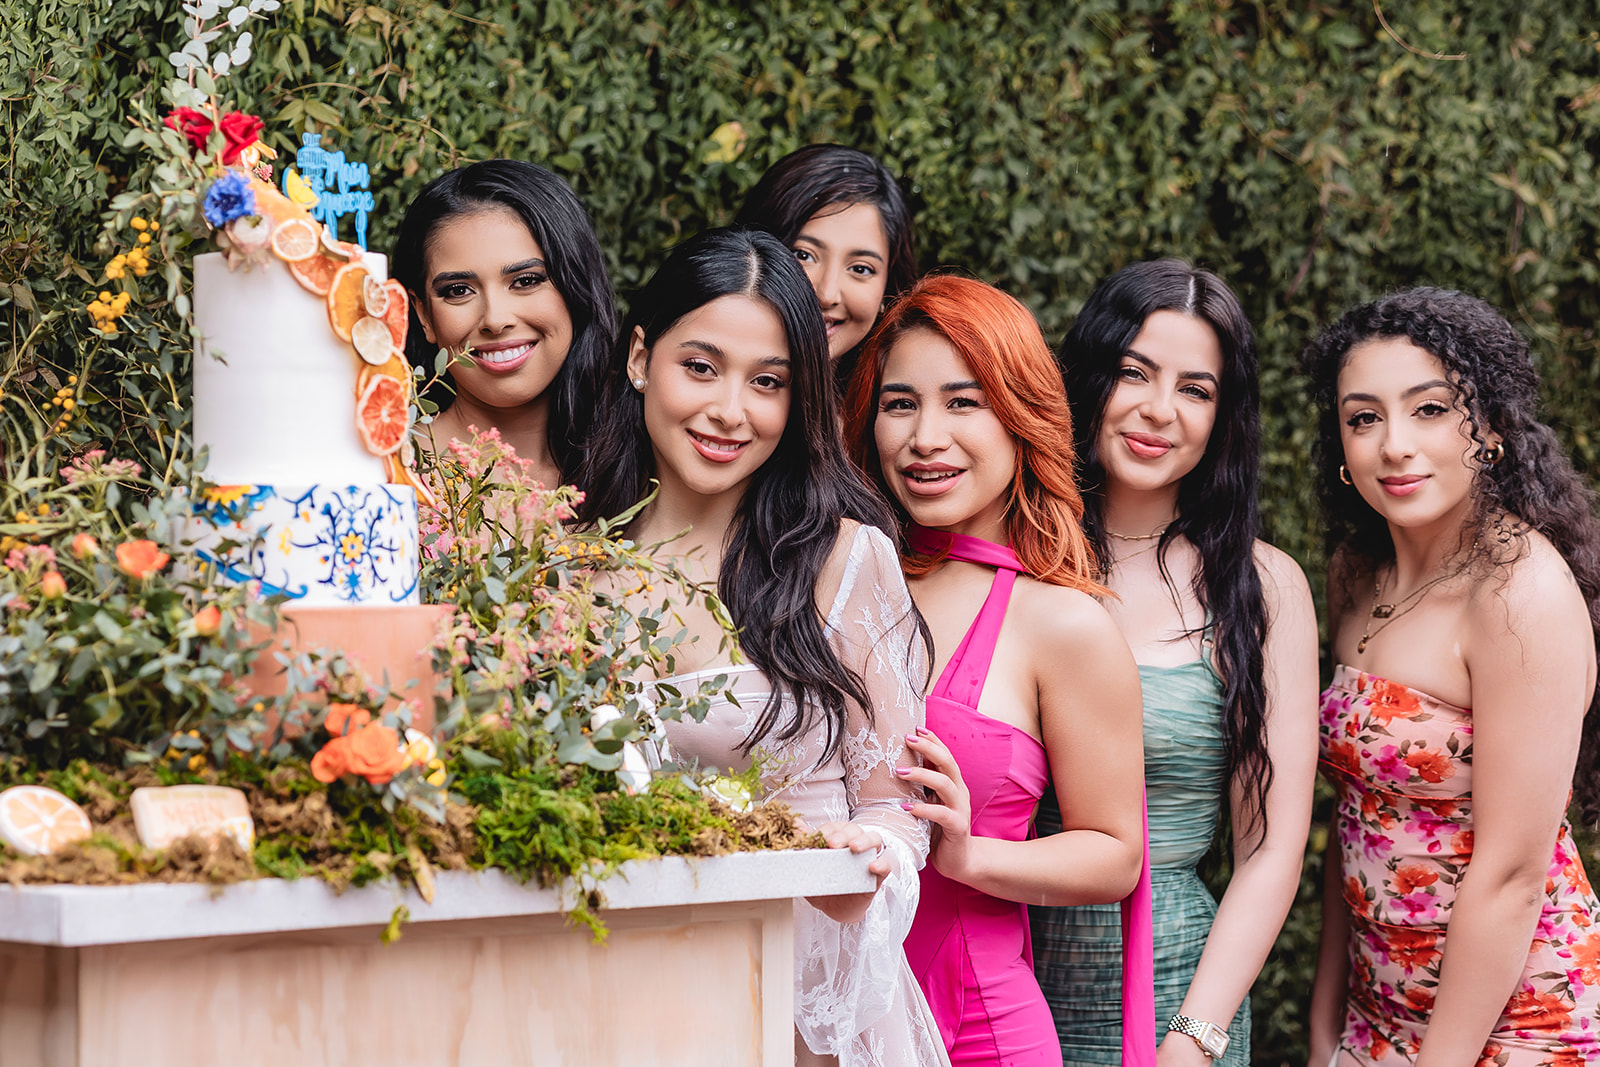 bridesmaid posing next to the wedding cake